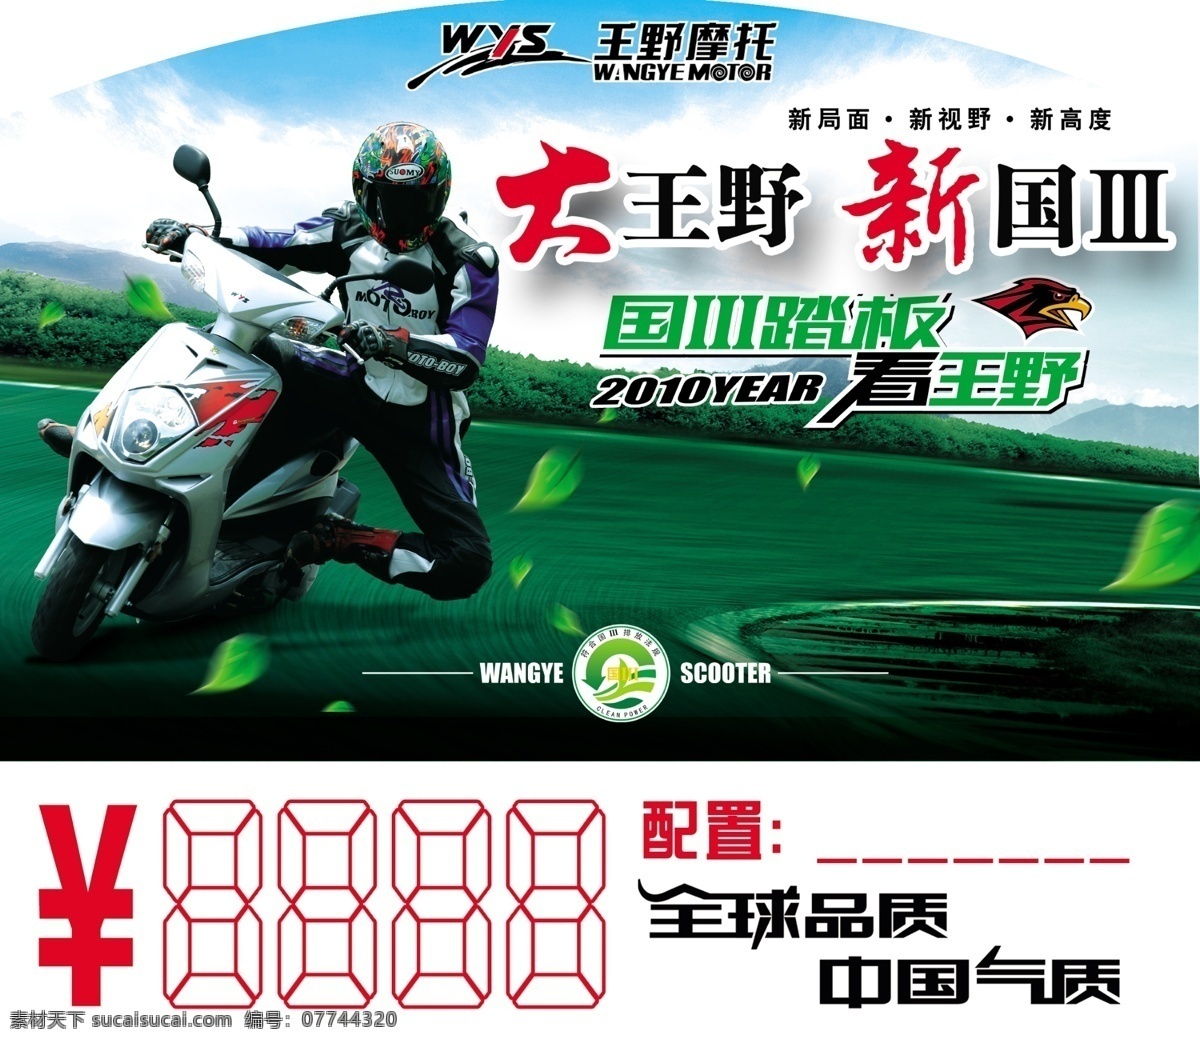 摩托车海报 摩托车 天空 绿叶 白云 人物 赛道 王野 广告设计模板 源文件